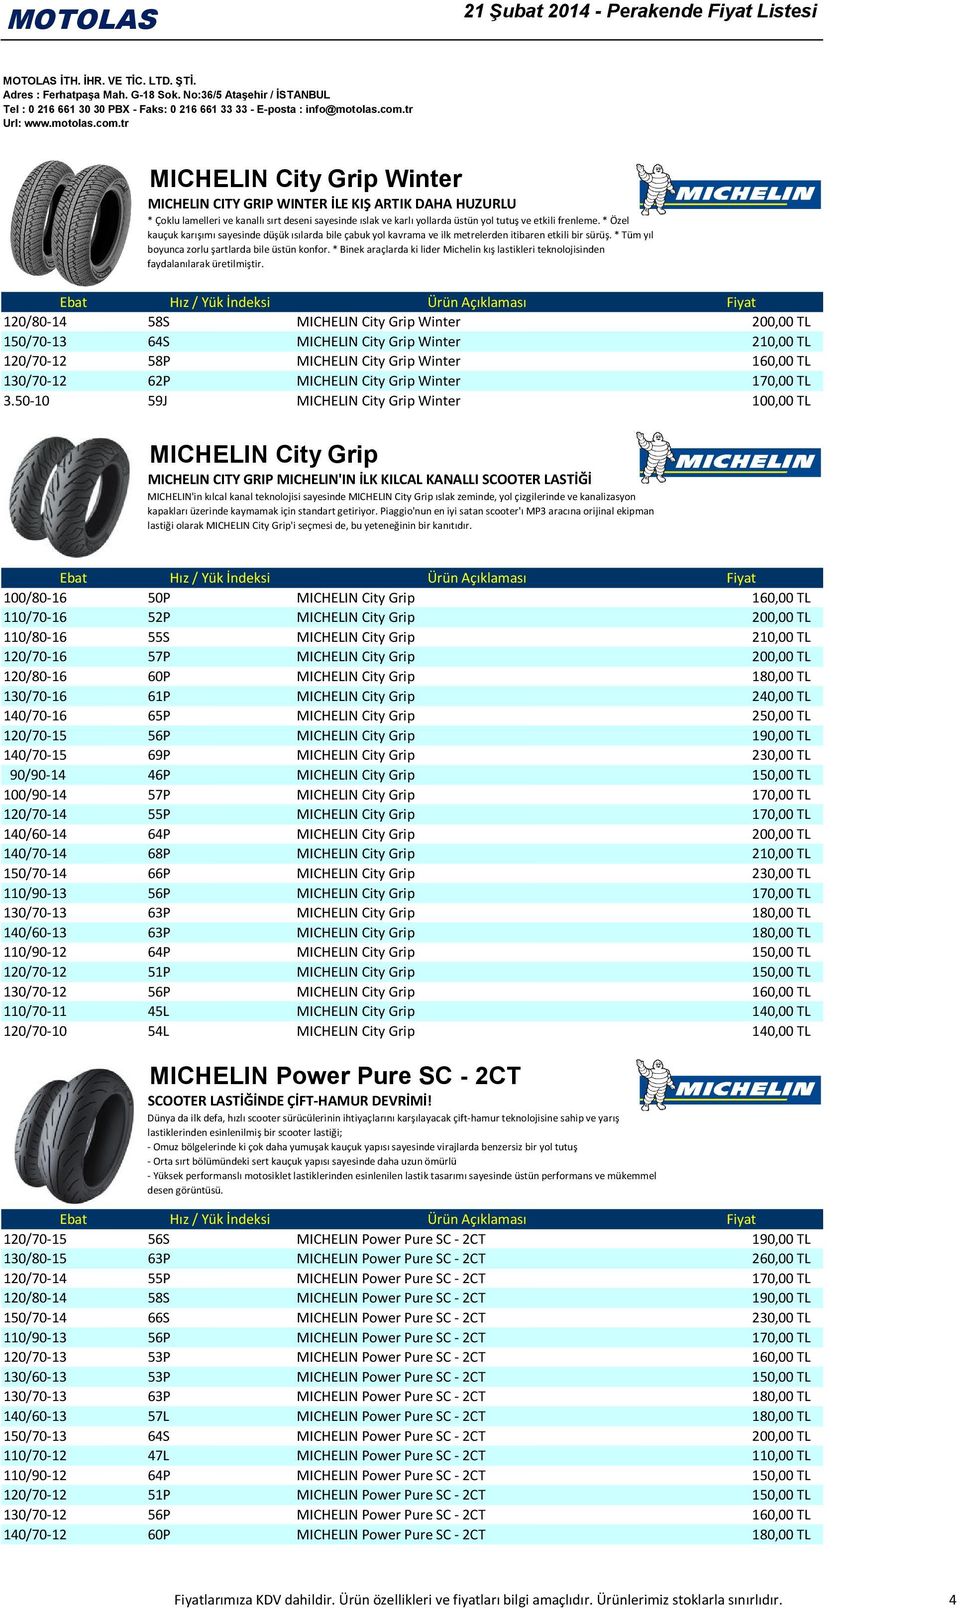 * Binek araçlarda ki lider Michelin kış lastikleri teknolojisinden faydalanılarak üretilmiştir.